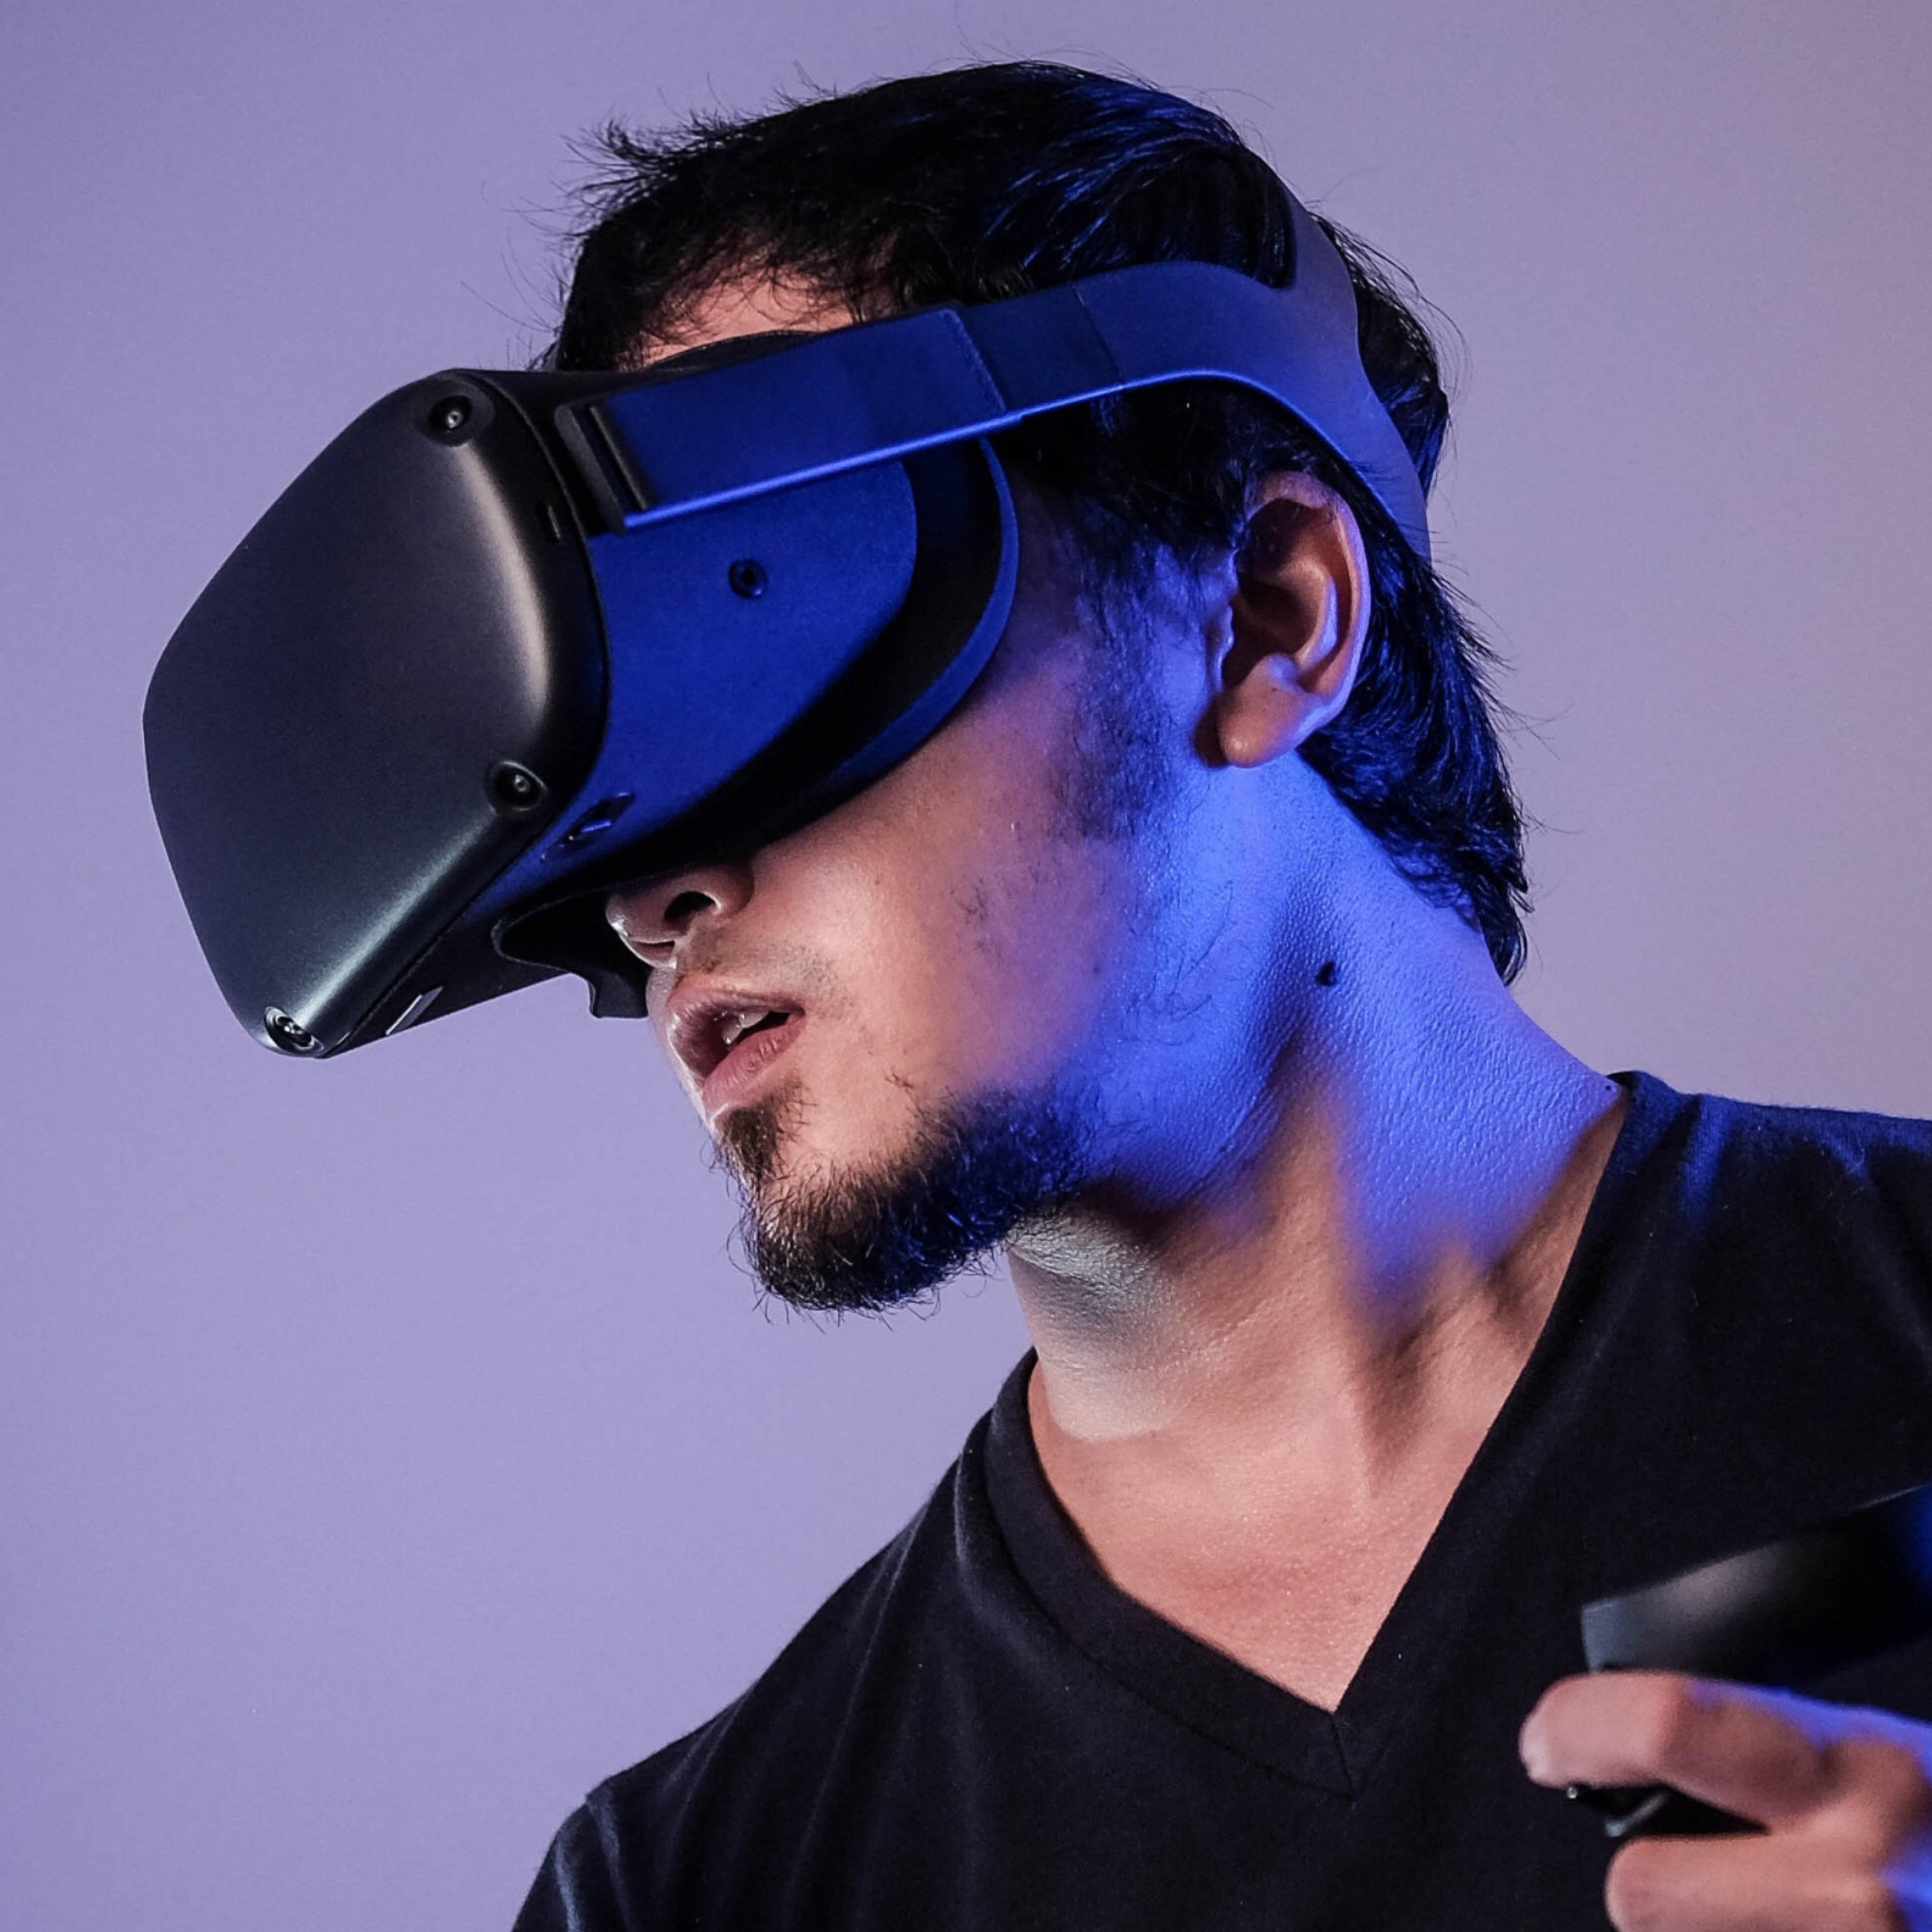 ¿Tienen futuro las terapias de salud con realidad virtual?